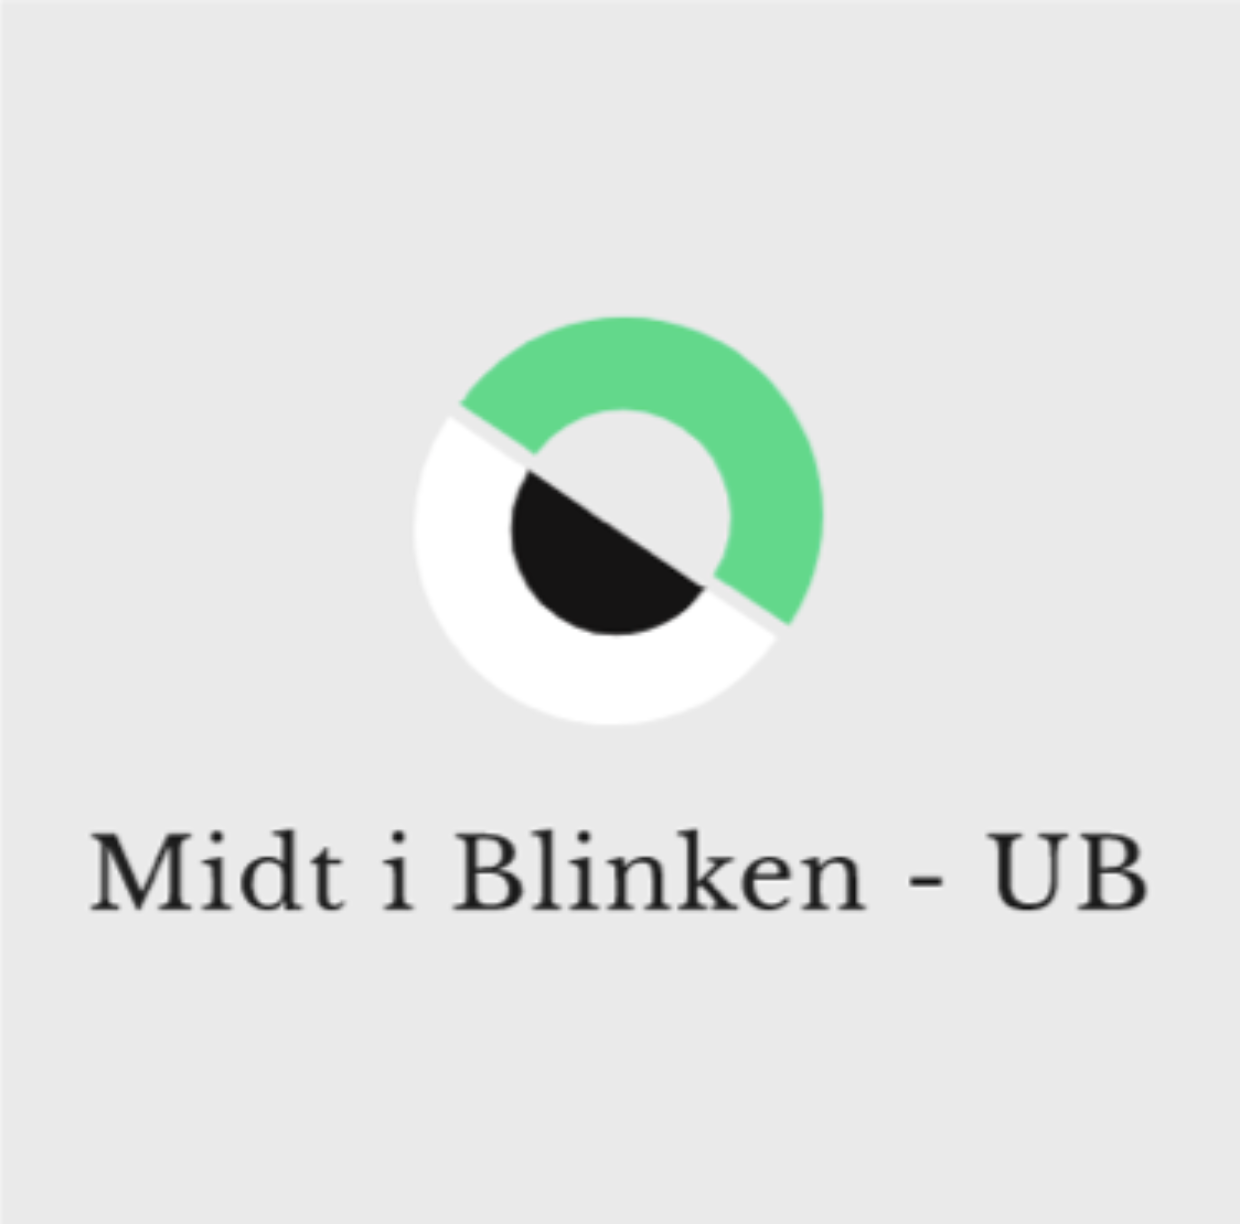 Midt i Blinken UB logo